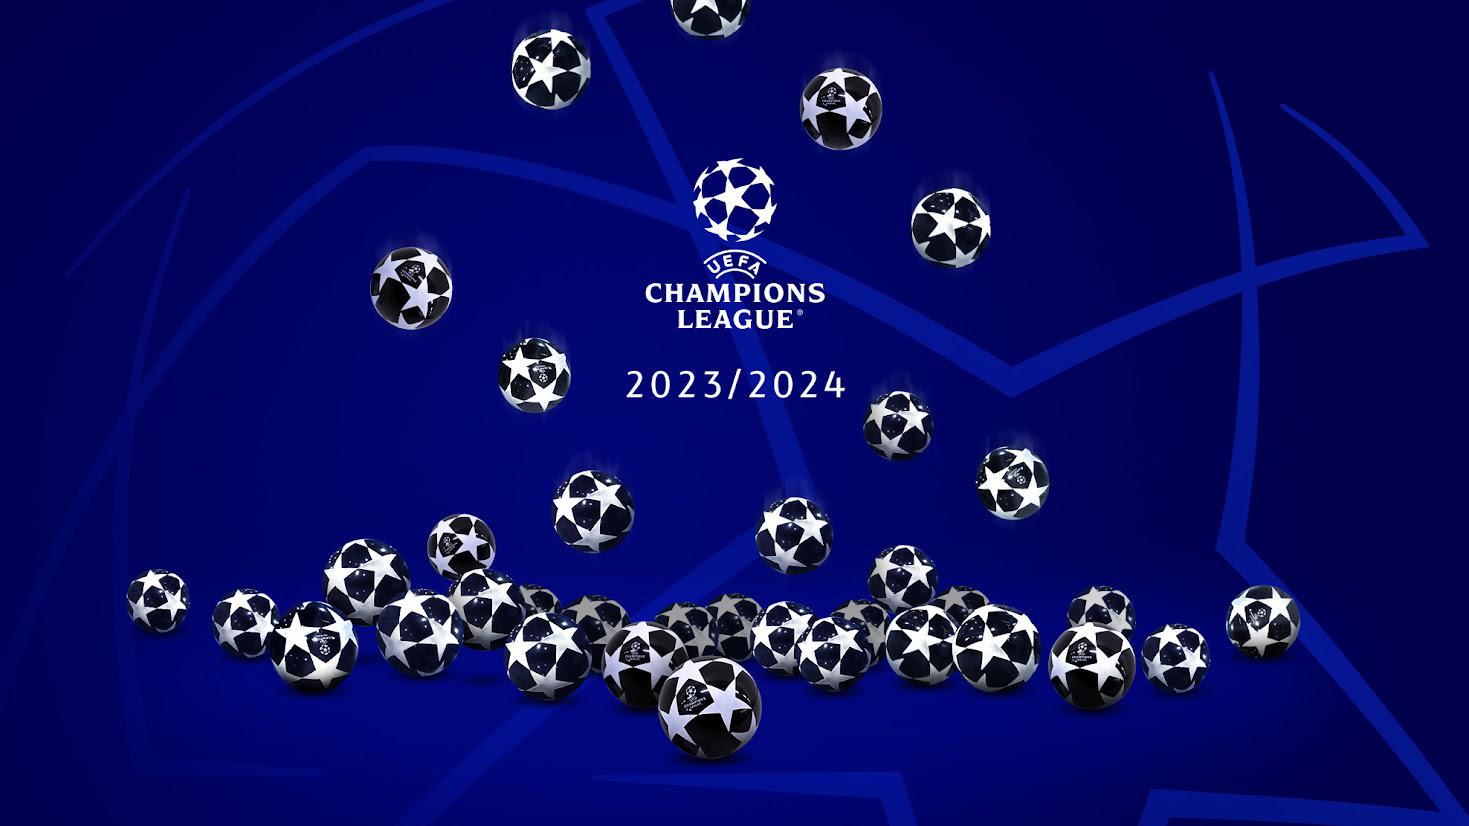 UEFA Champions League, Achtelfinale, Auslosung Wer, wo, wann? UEFA Champions League UEFA